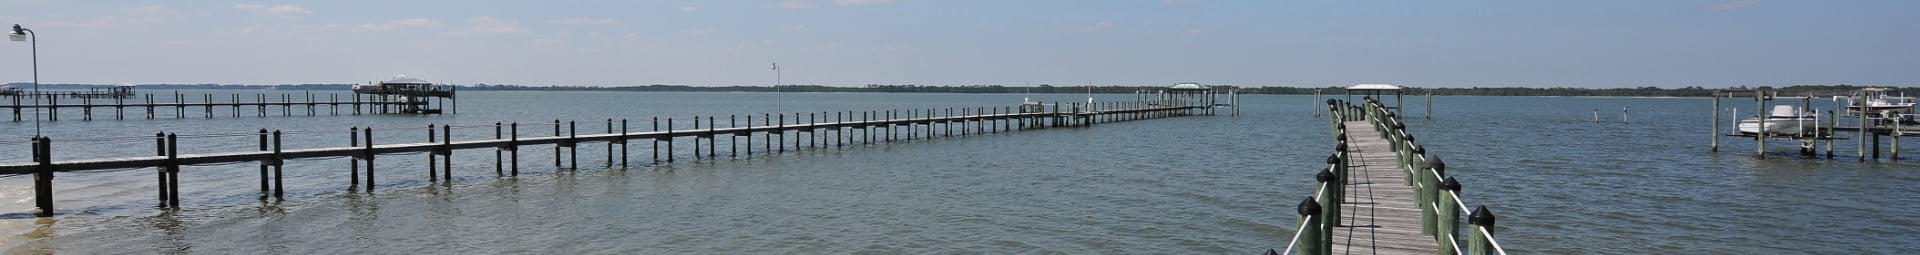 Carrabelle fishing docks